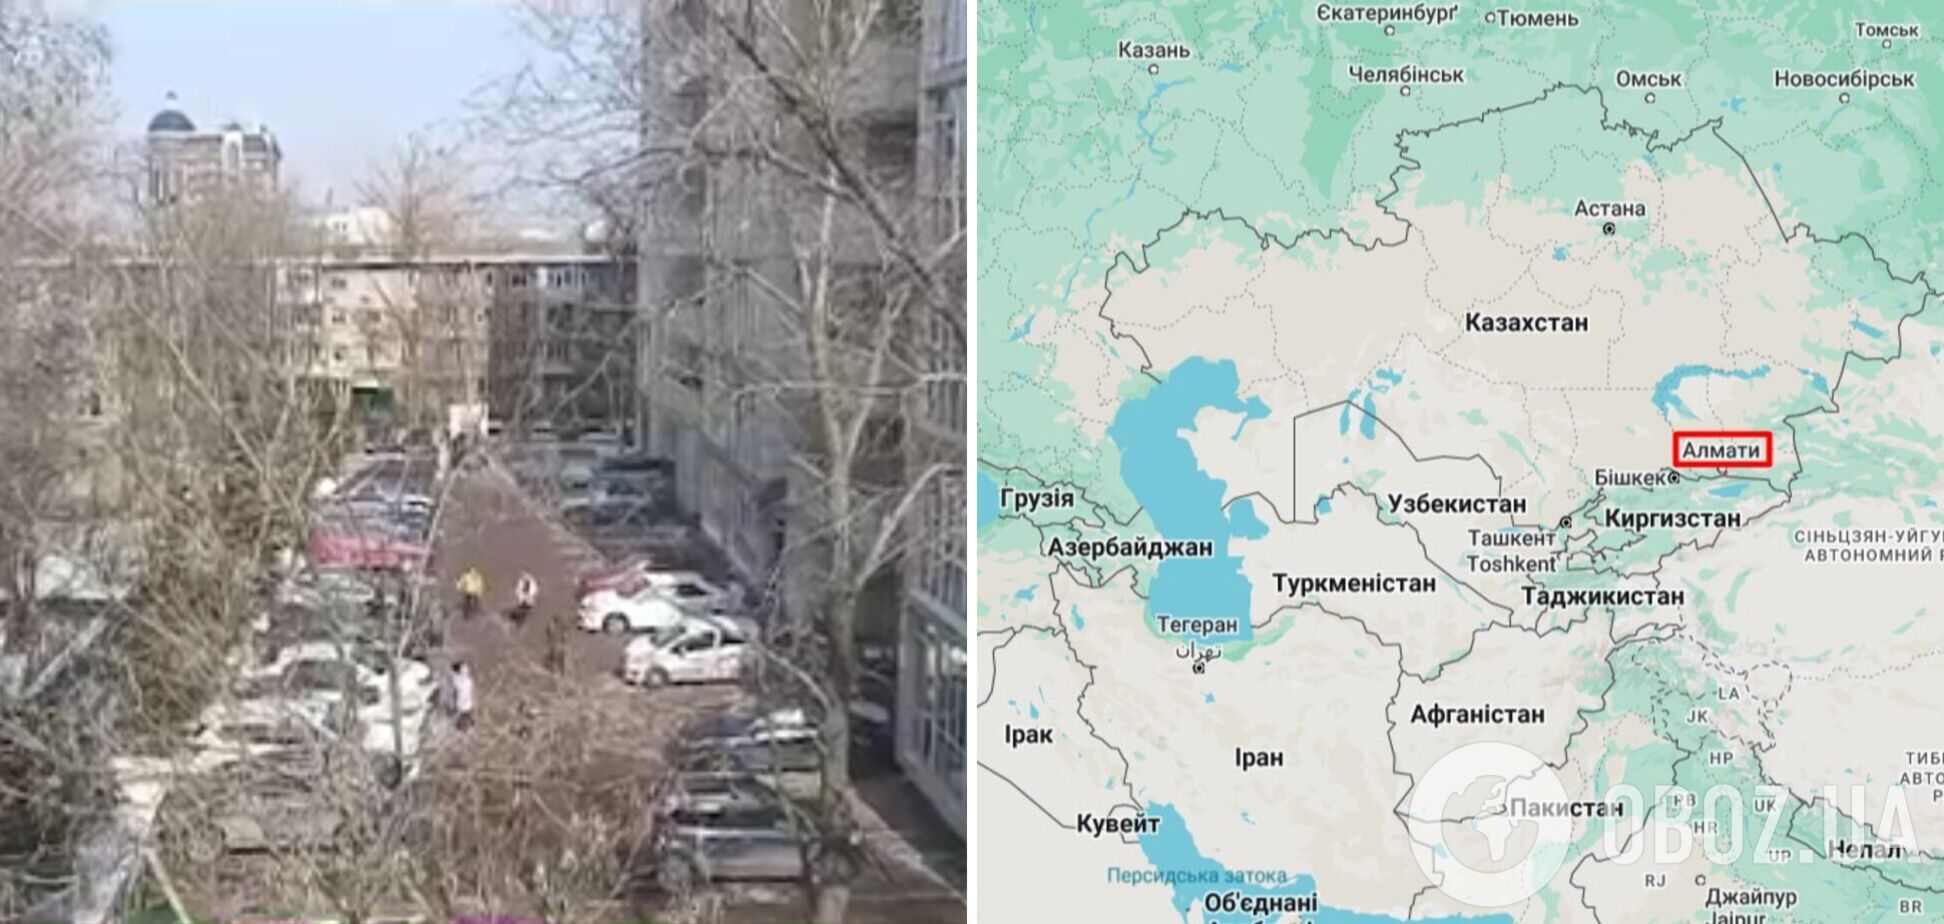 У квартирах хиталися меблі, люди вибігали на вулицю: у Казахстані стався землетрус магнітудою 6,1. Відео